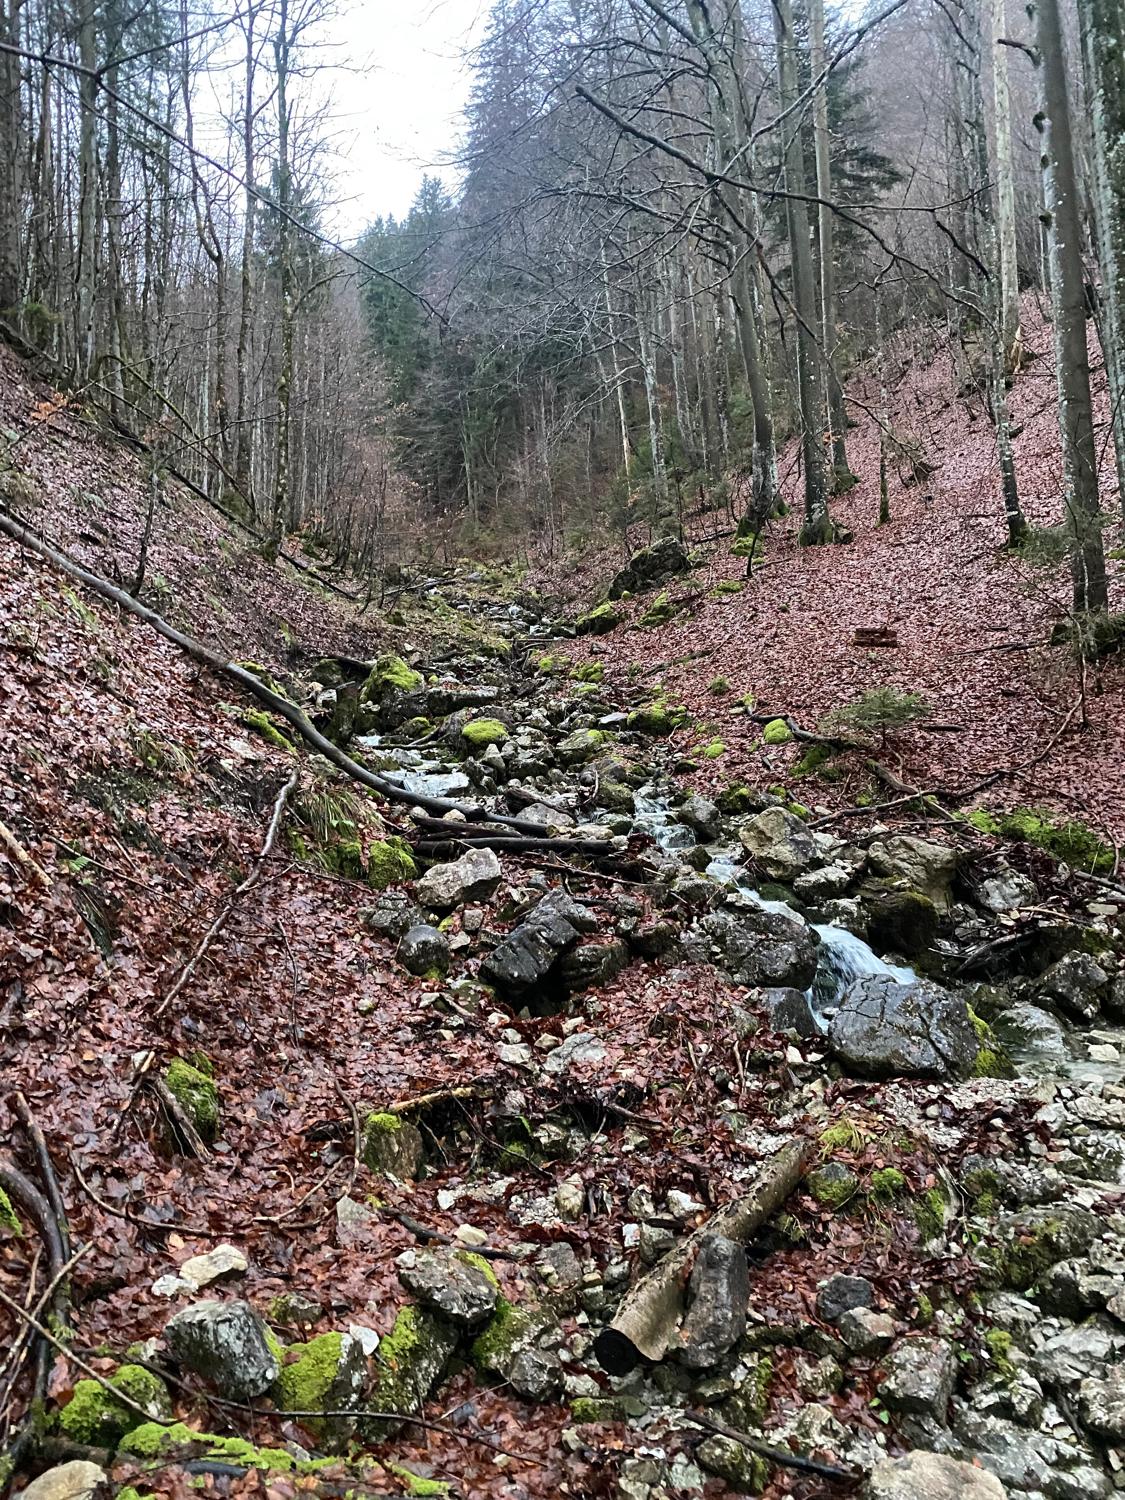 A run / hike up the Brecherspitz